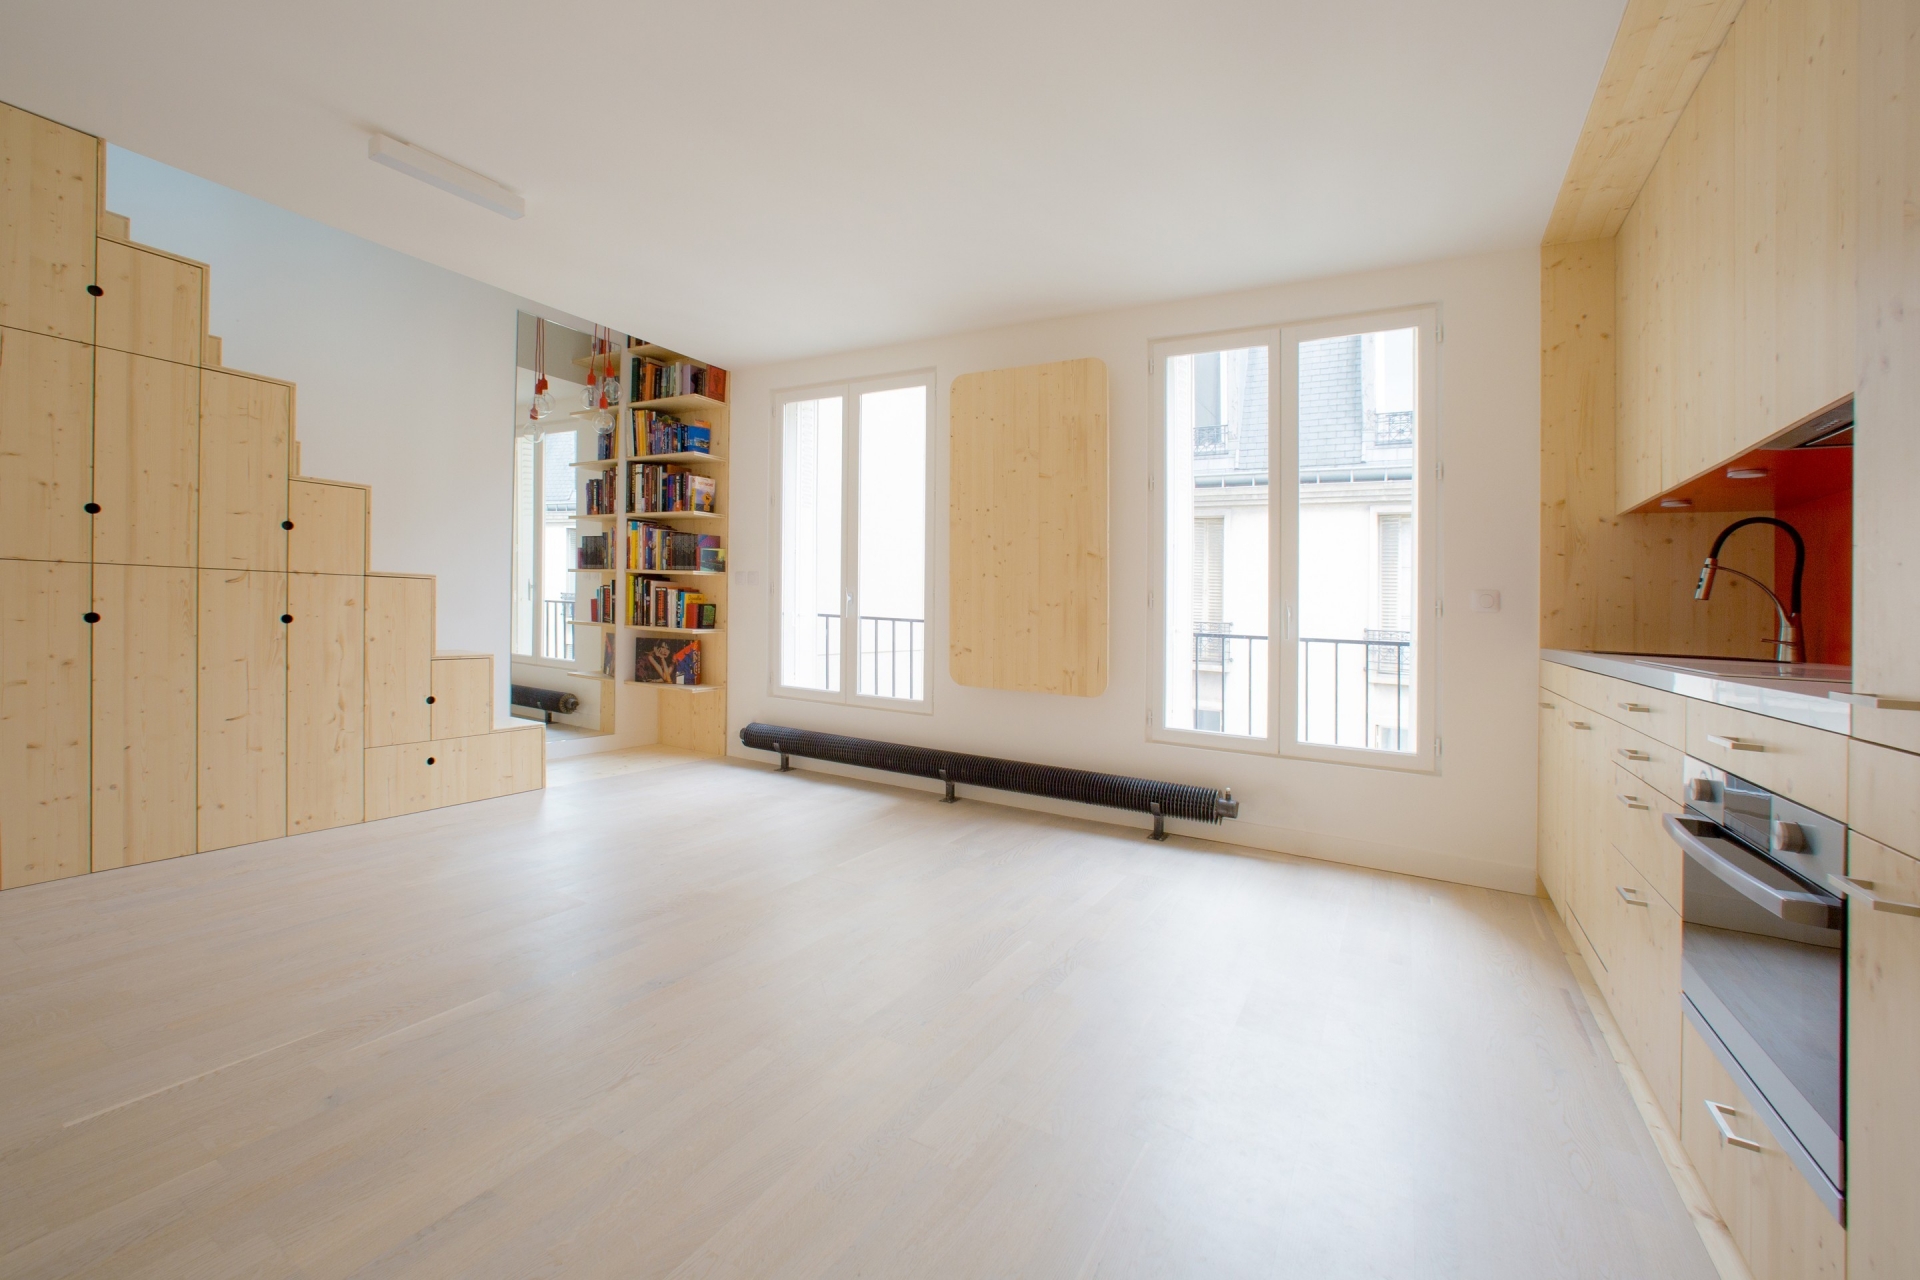 Căn hộ sử dụng gam màu trắng thanh lịch và nội thất bằng vật liệu gỗ sáng màu để tạo cảm giác cho không gian rộng hơn so với diện tích thật.